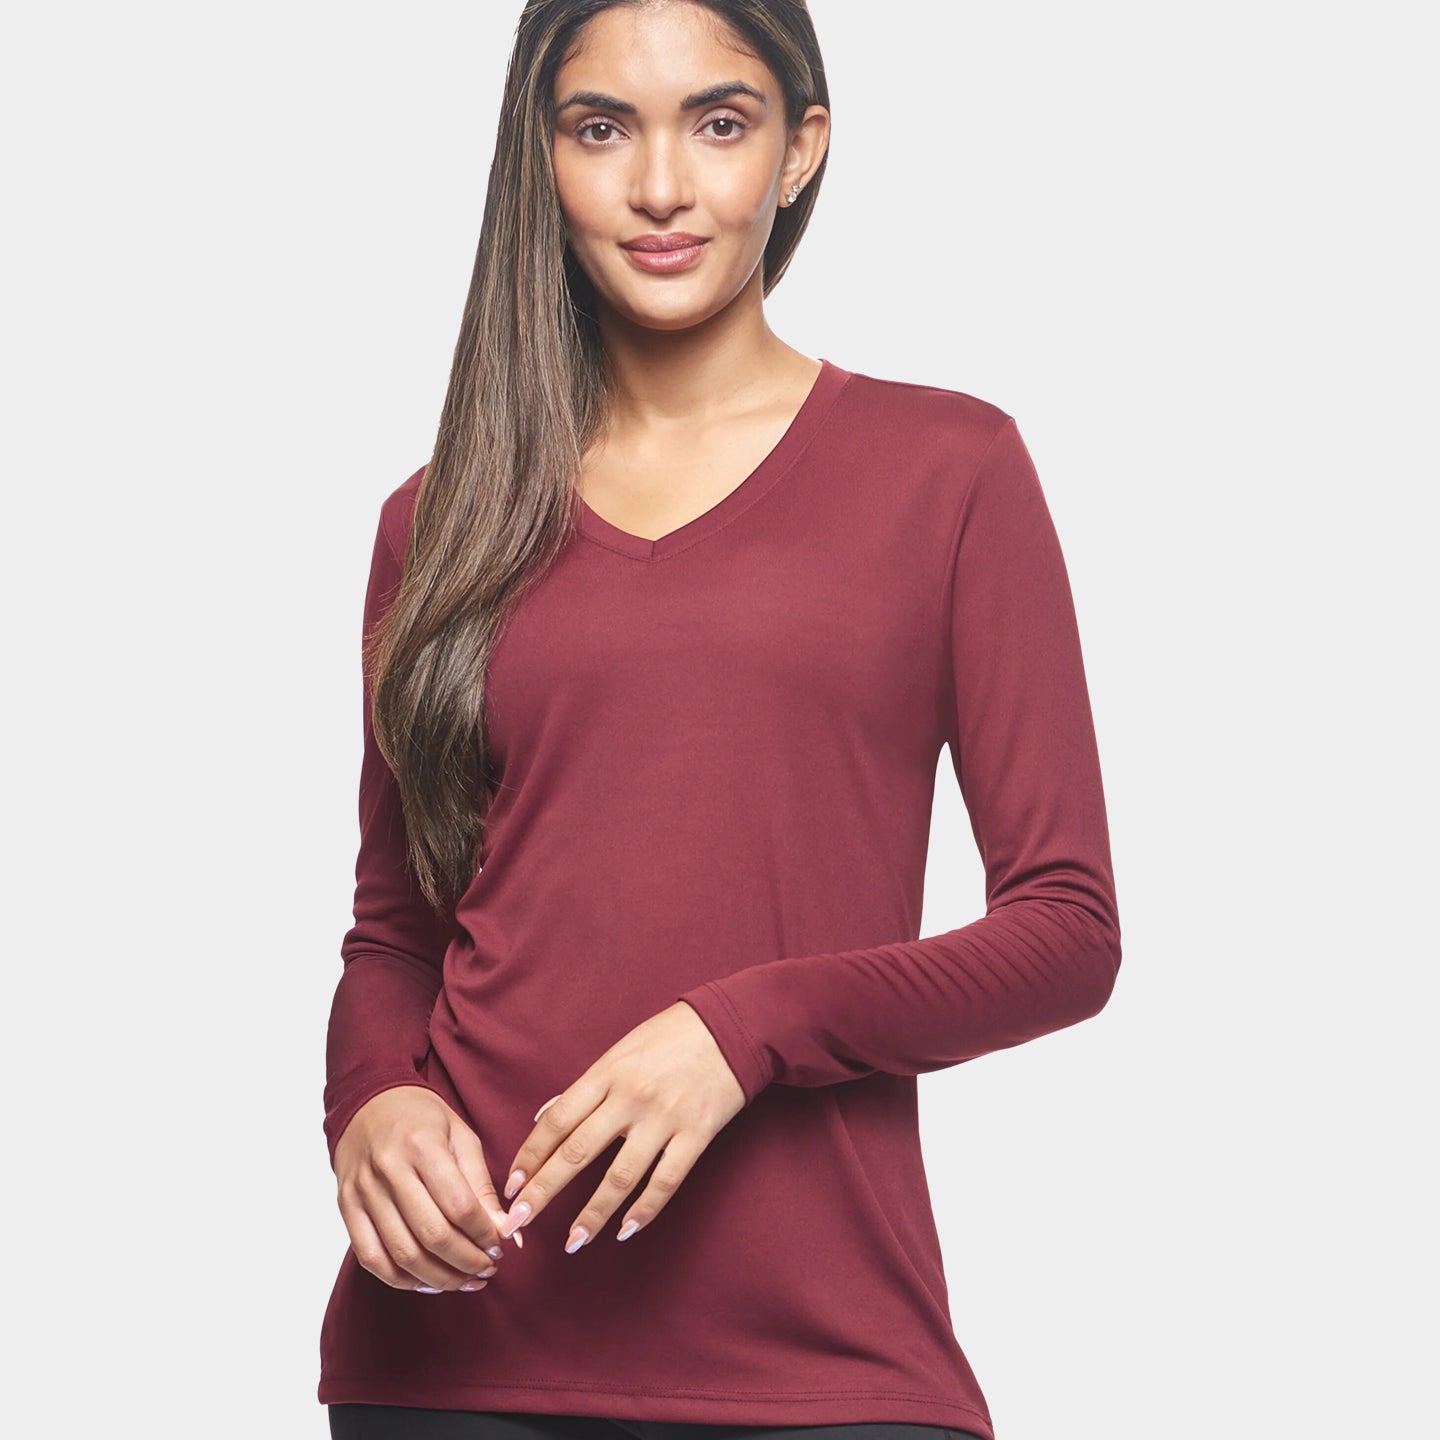 Expert Brand DriMax Women's Performance V-Neck Long Sleeve Shirt, 3XL, Cardinal A1